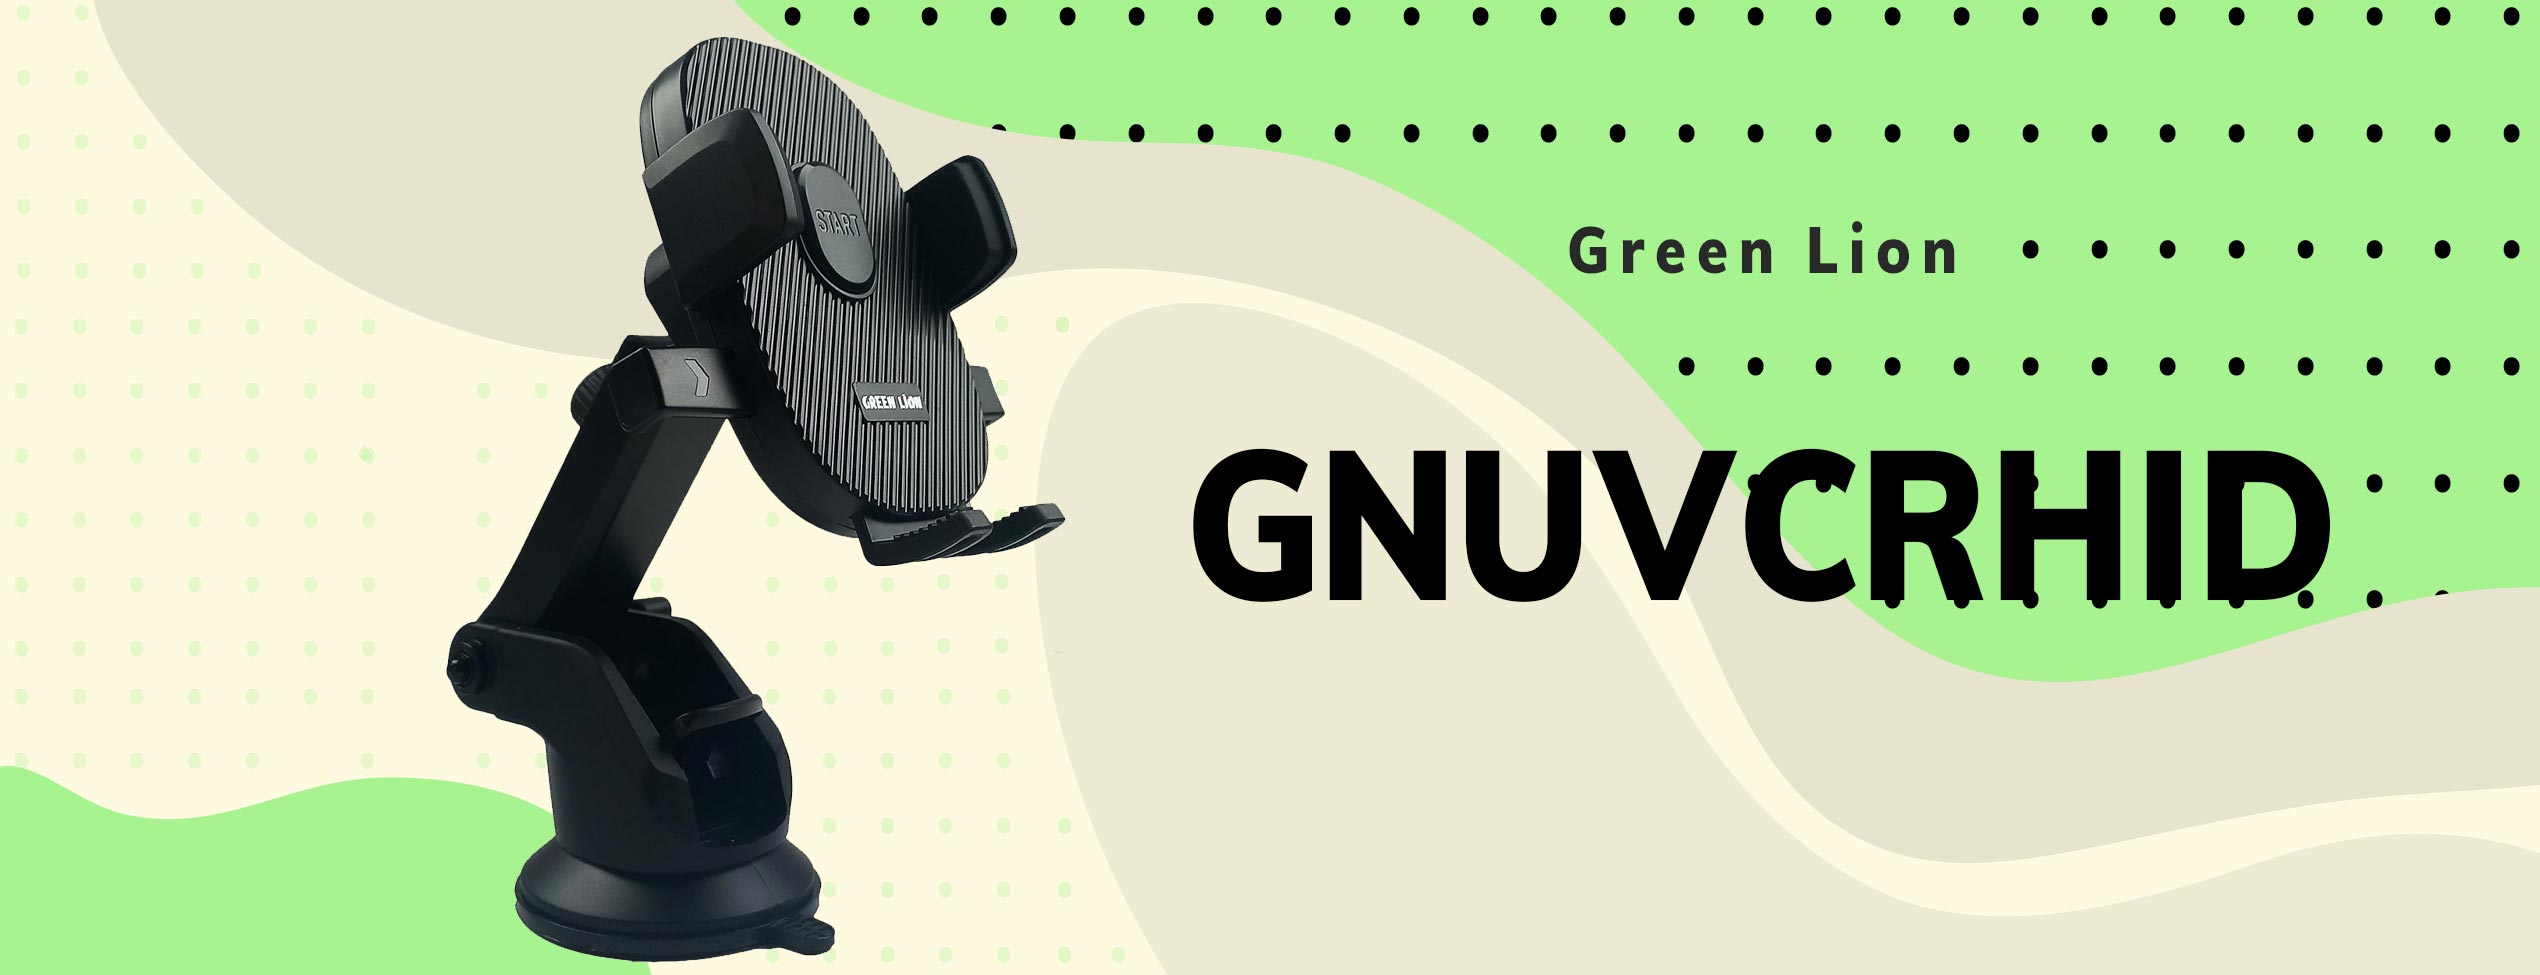 پایه نگهدارنده گرین لاین مدل GNUVCRHID